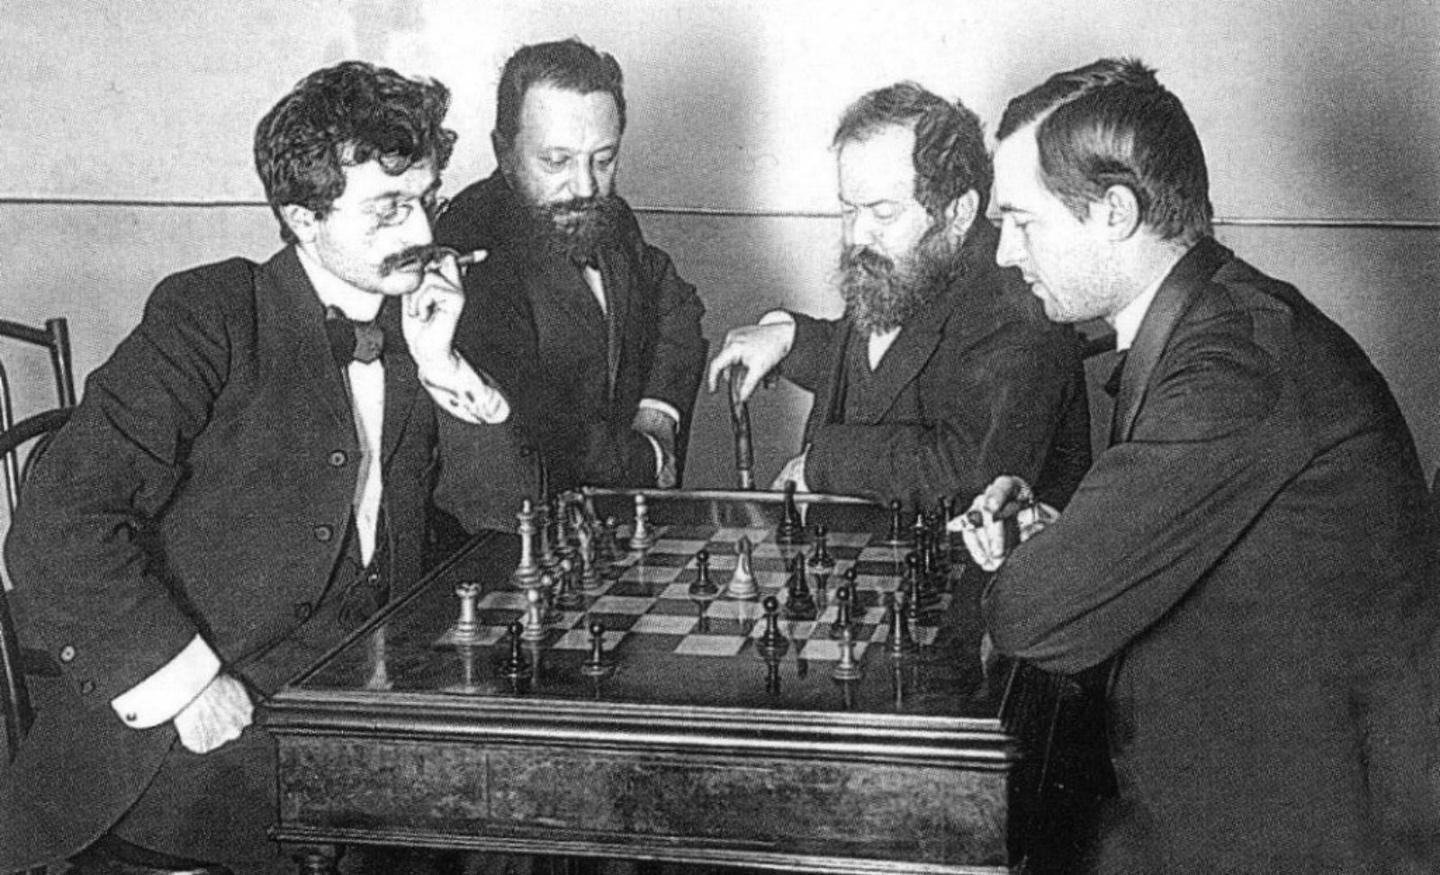 Турнир Петербург 1895/96, во время которого встретились 4 сильнейших шахматиста мира.